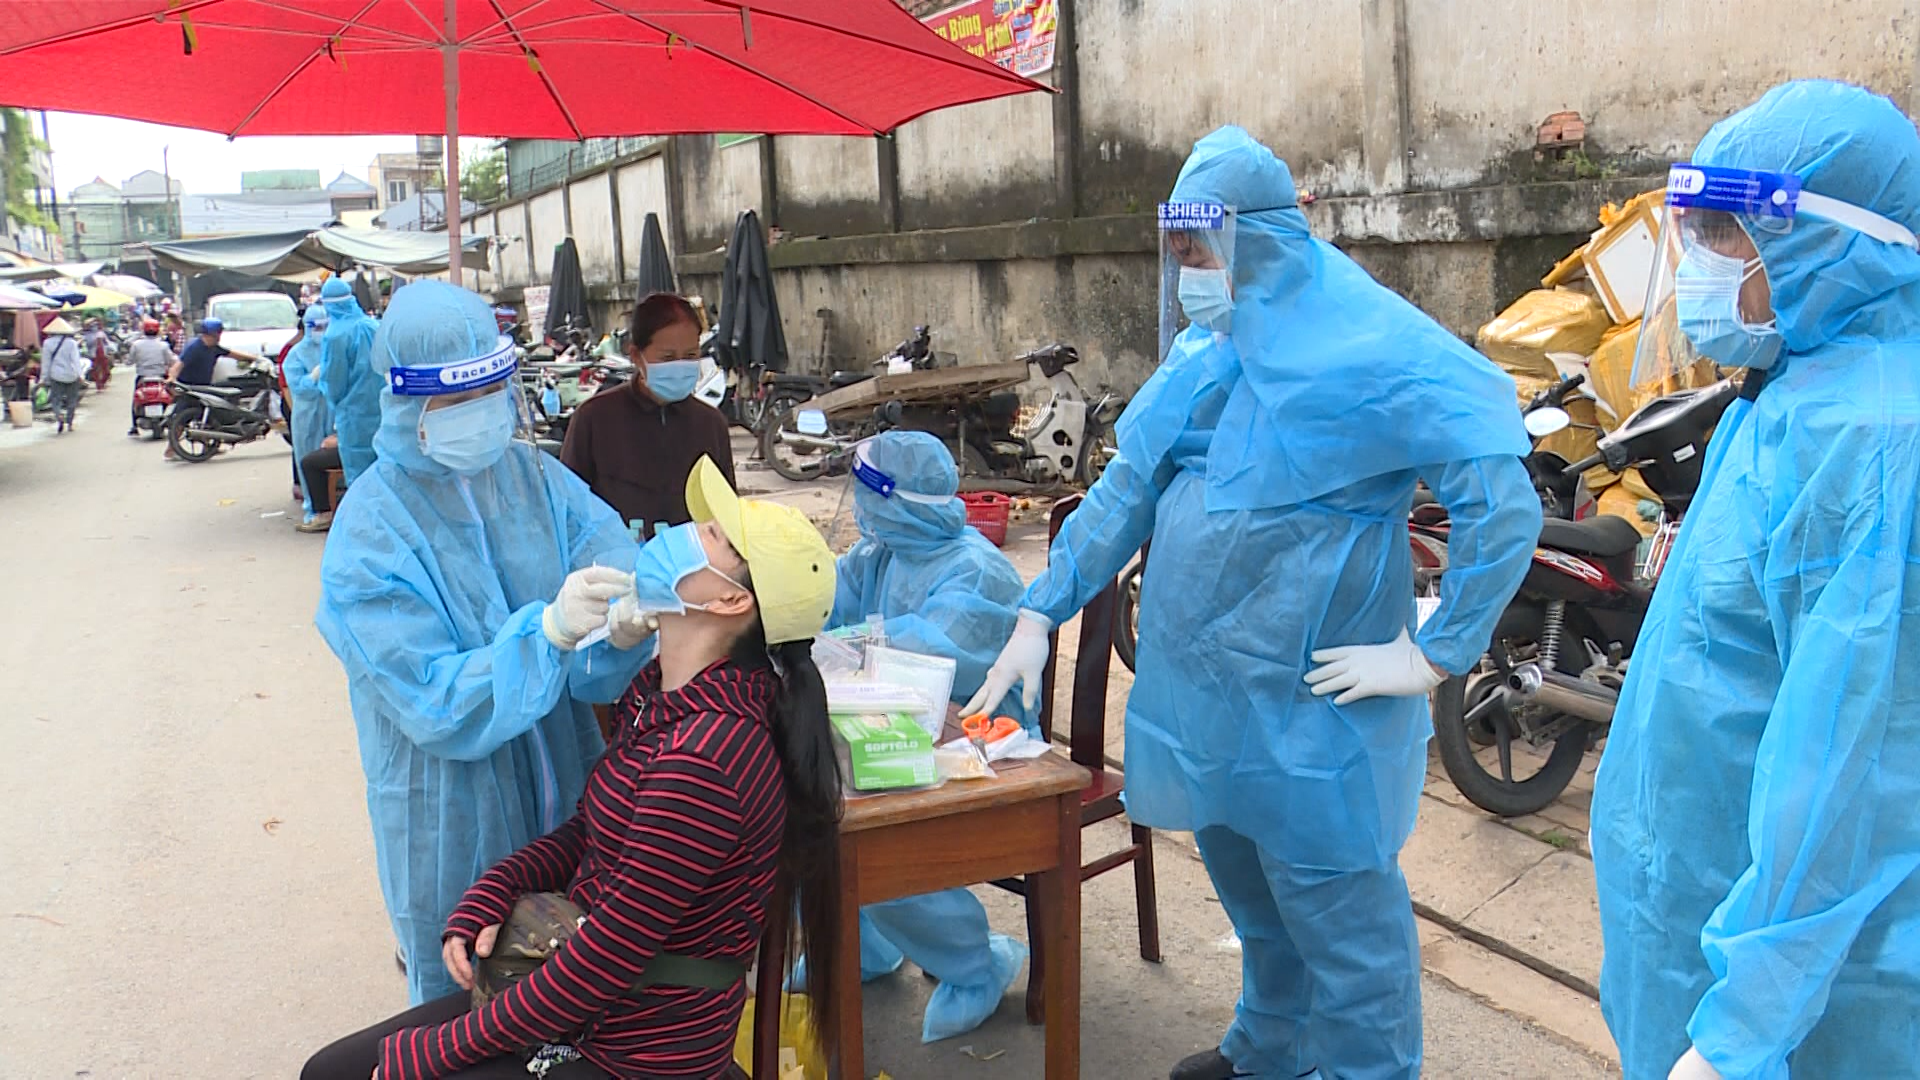 Ngành y tế lấy mẫu xét nghiệm cho người dân ở phường Tân Phước Khánh, thị xã Tân Uyên, Bình Dương. Ảnh: Dương Bình